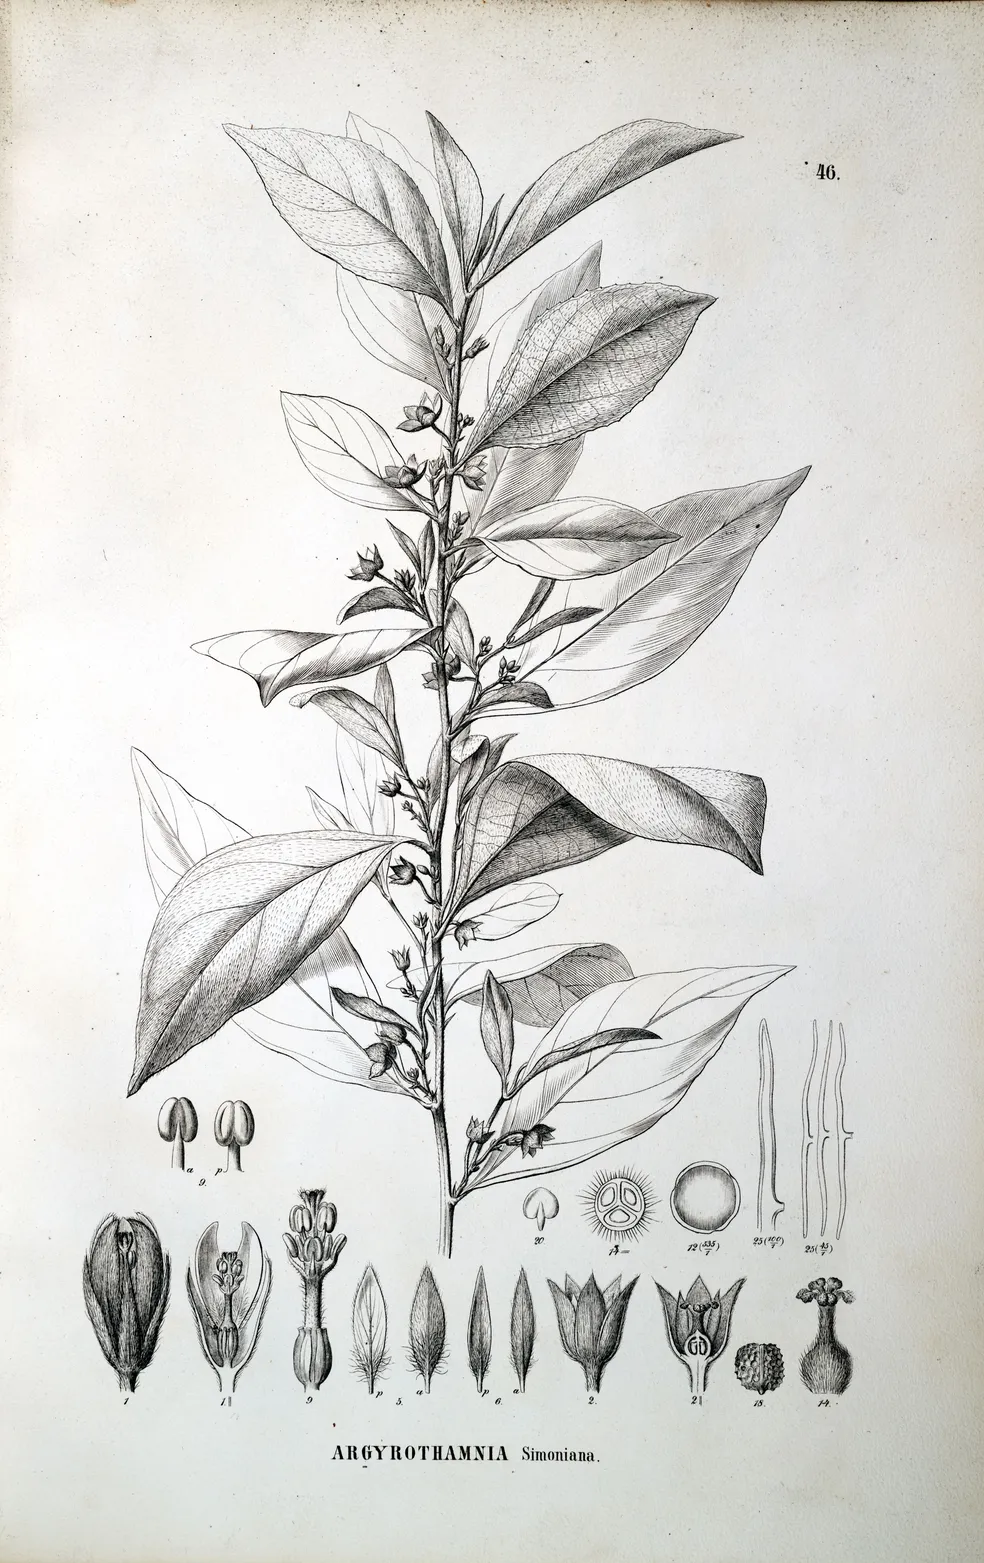 Argyrothamnia simoniana descrita na obra digitalizada do Flora Brasiliensis — Foto: Johannes Müller Argoviensis / Centro de Referência em Informação Ambiental (Cria)